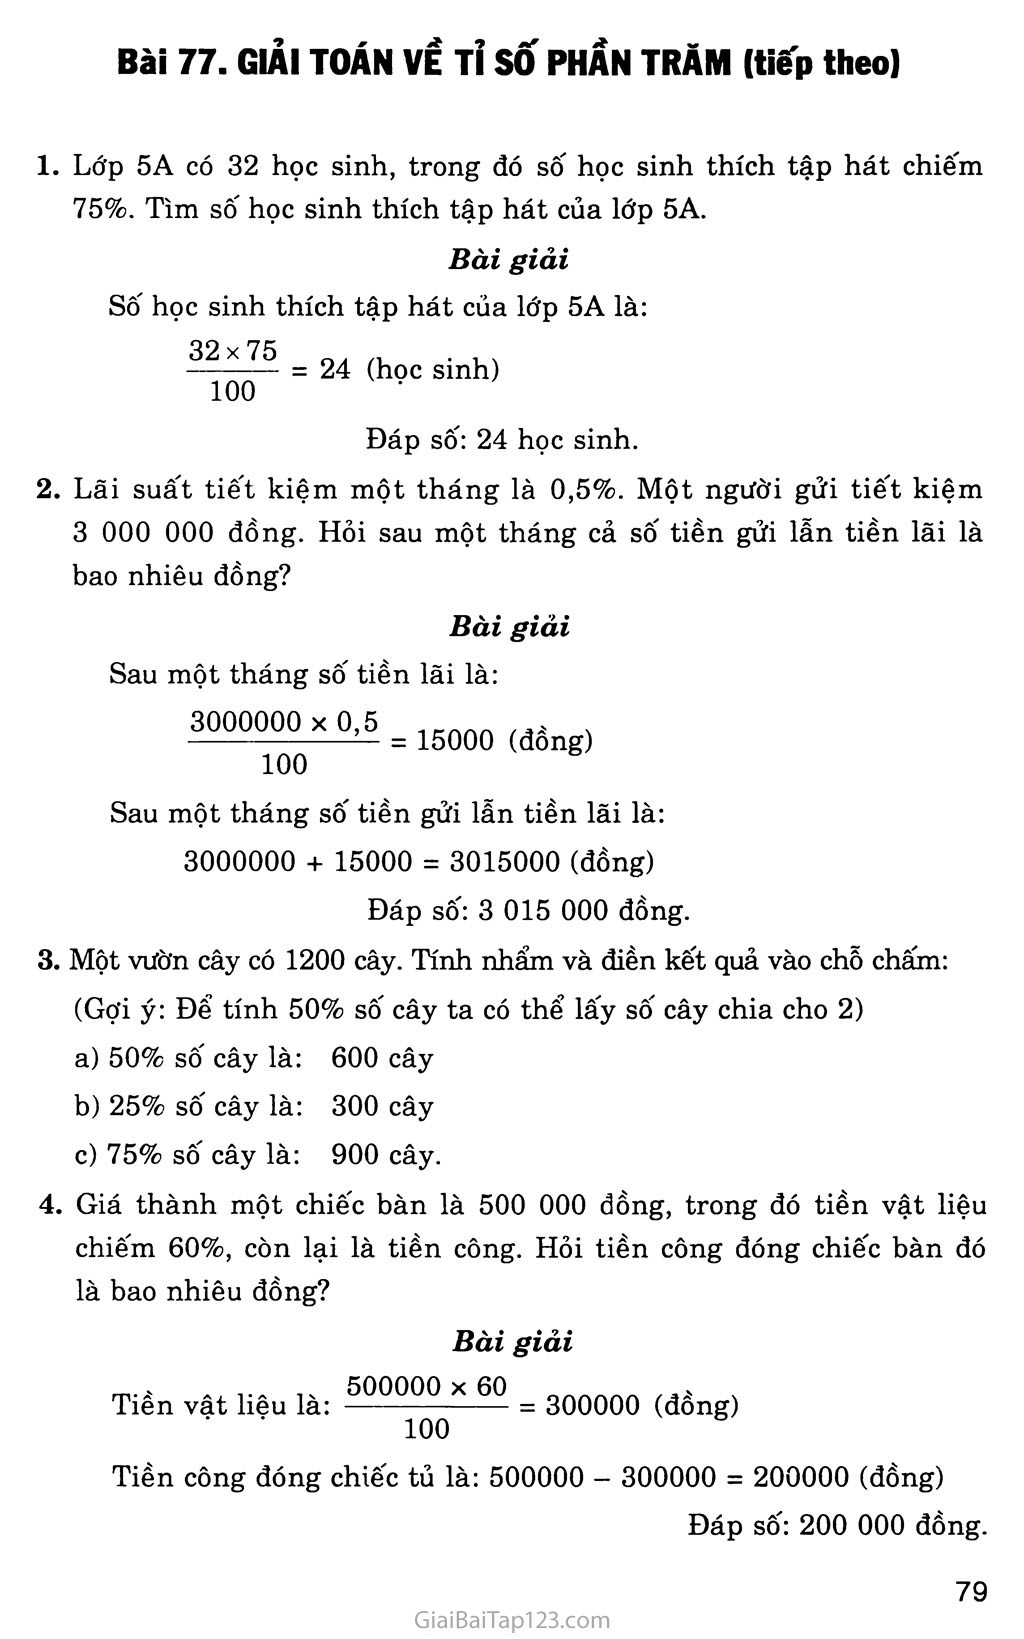 Bài 77: Giải toán về tỉ số phần trăm (tiếp theo) trang 1